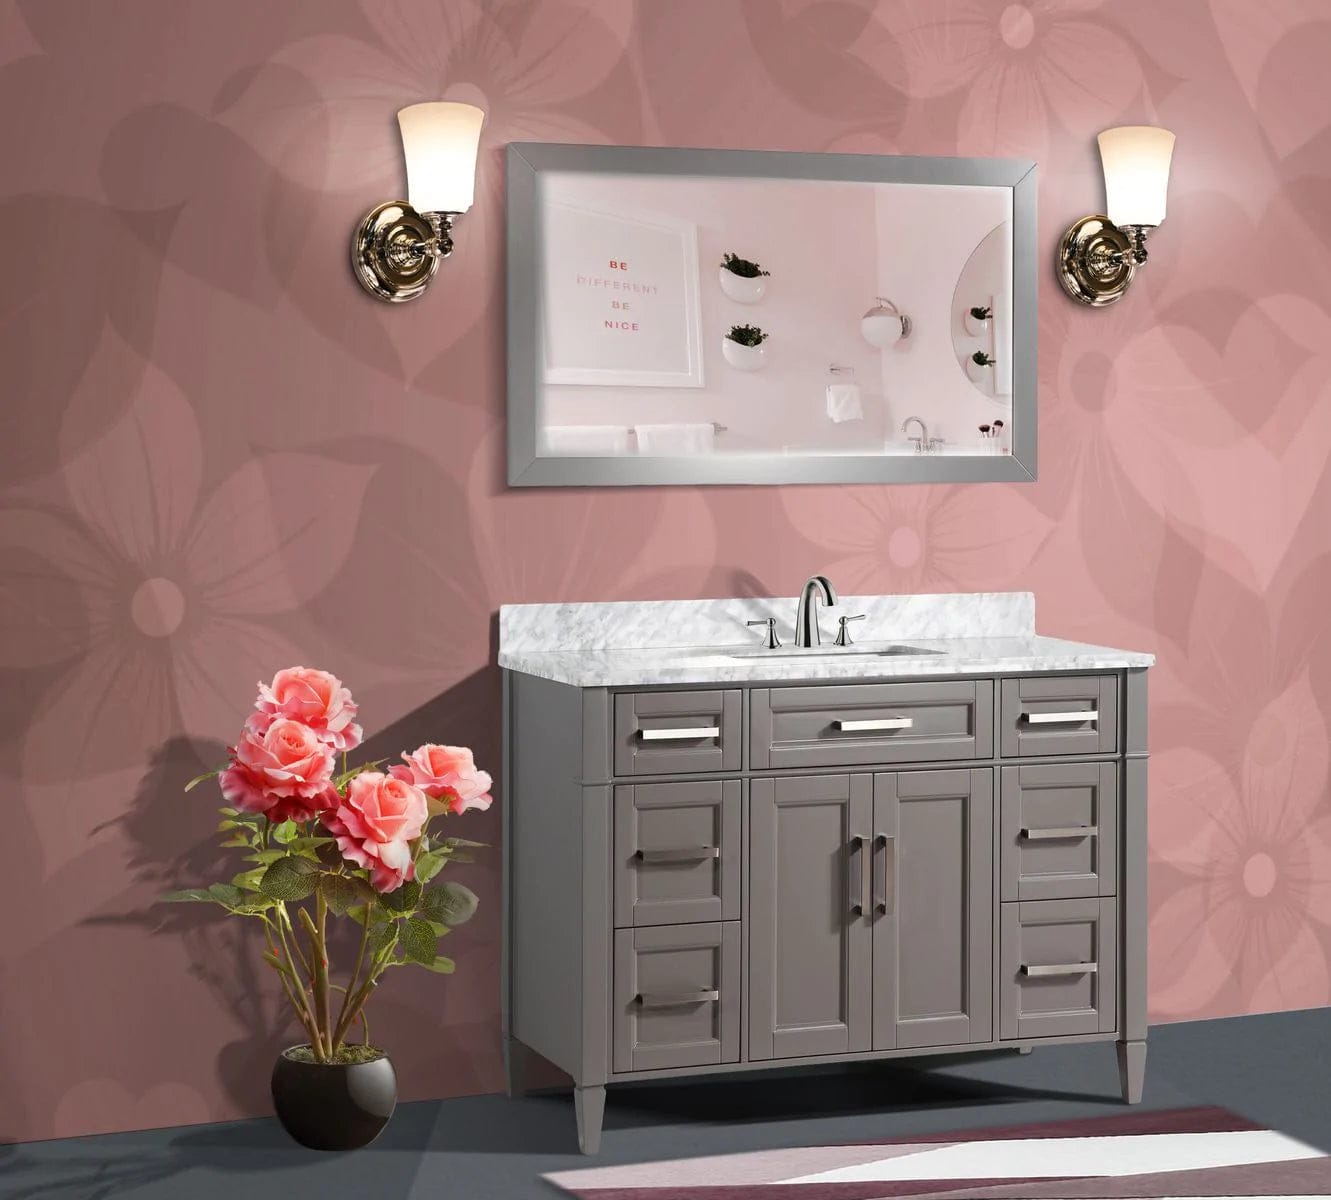 48 in. Single Sink Bathroom Vanity Set in Gray,Carrara Marble Stone Top - Decohub Home